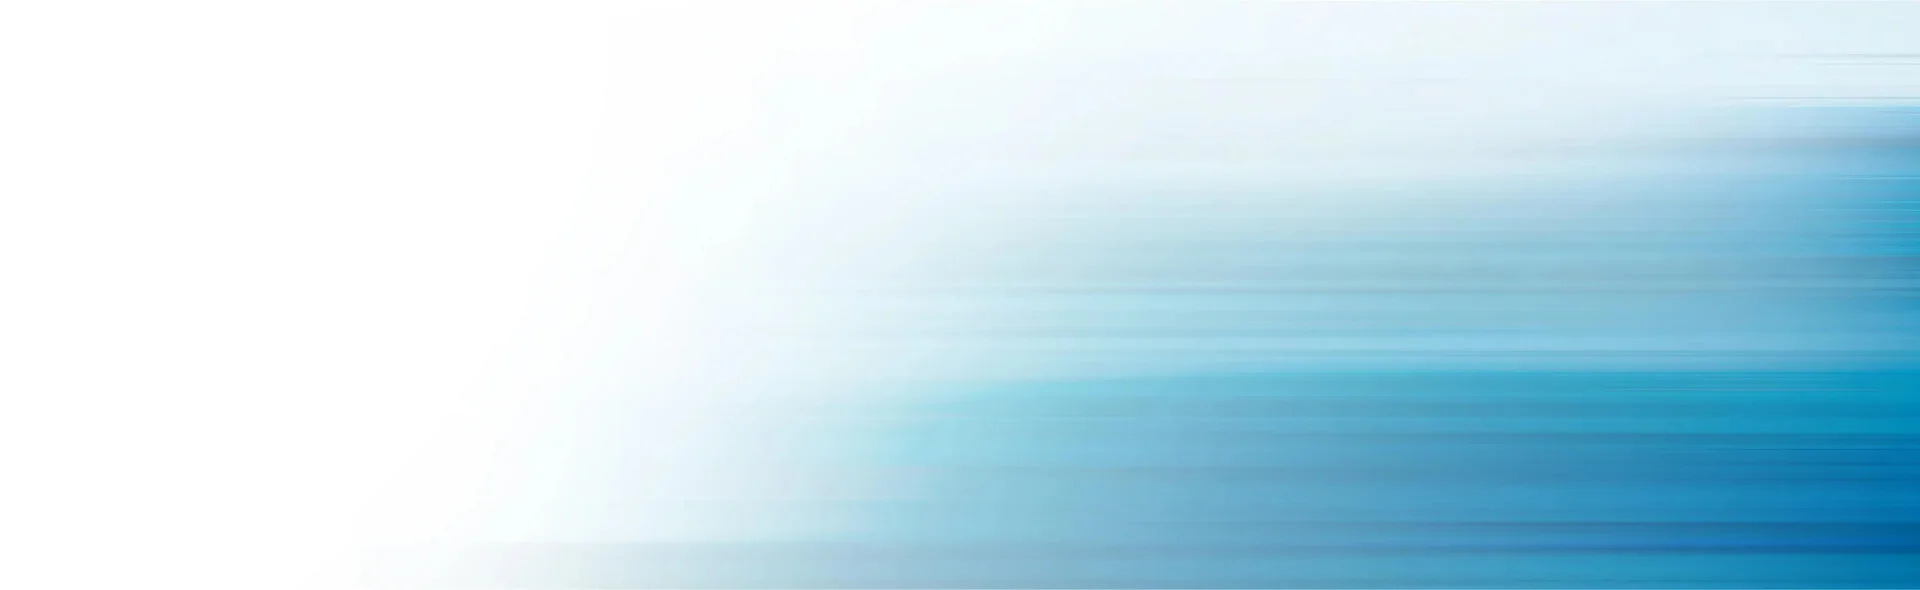 Hintergrundbild mit einem Farbverlauf von weiss nach blau